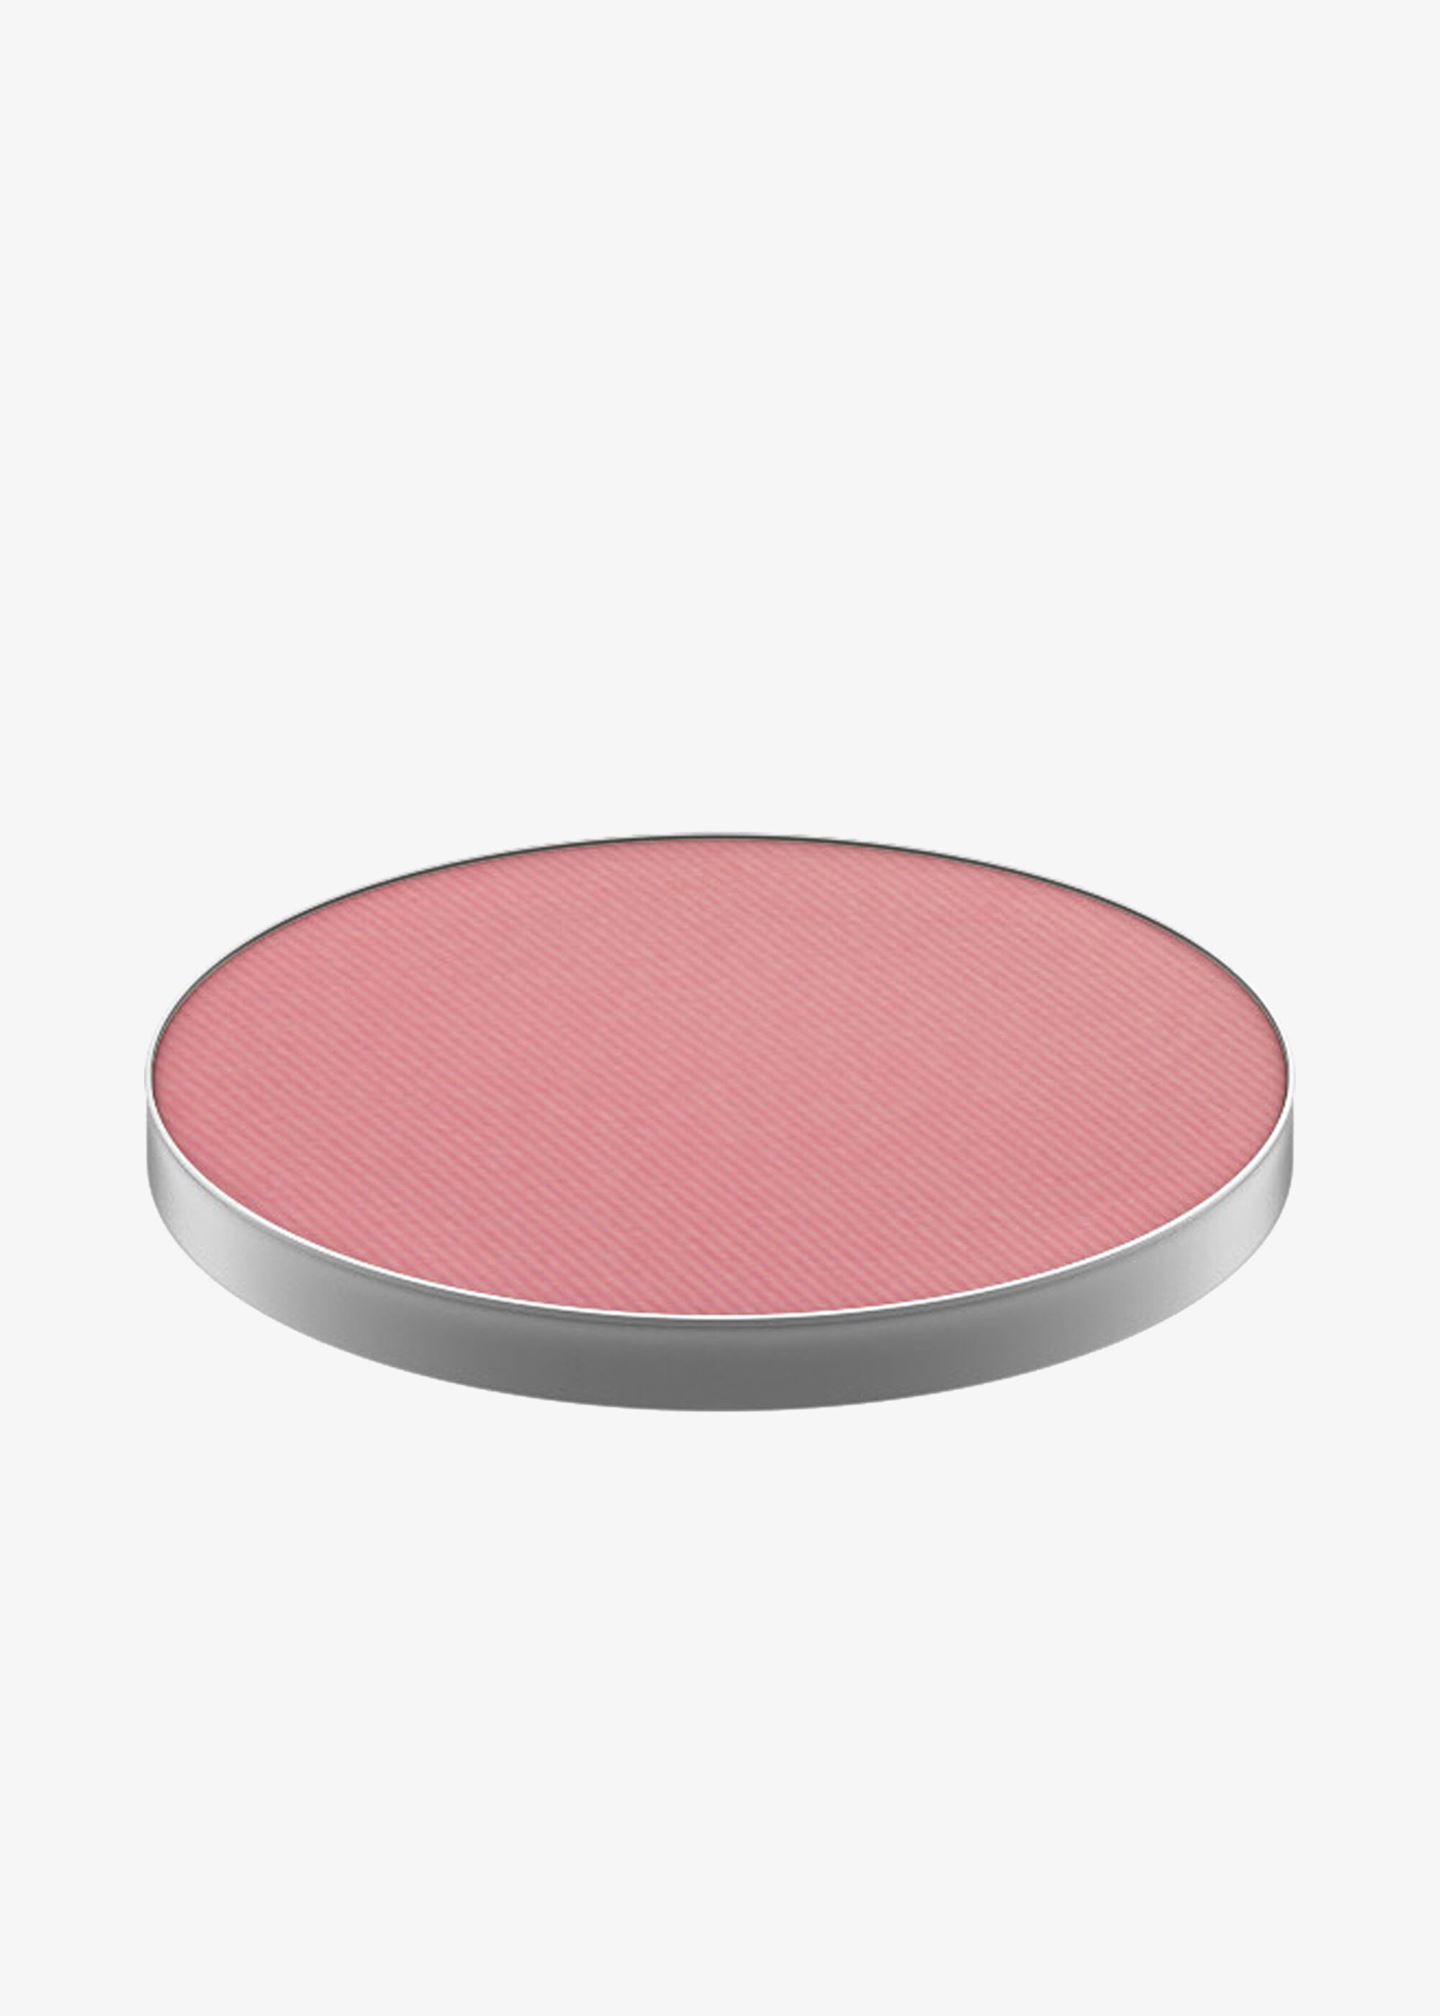 Powder Blush «Pro Palette Refill Pan»